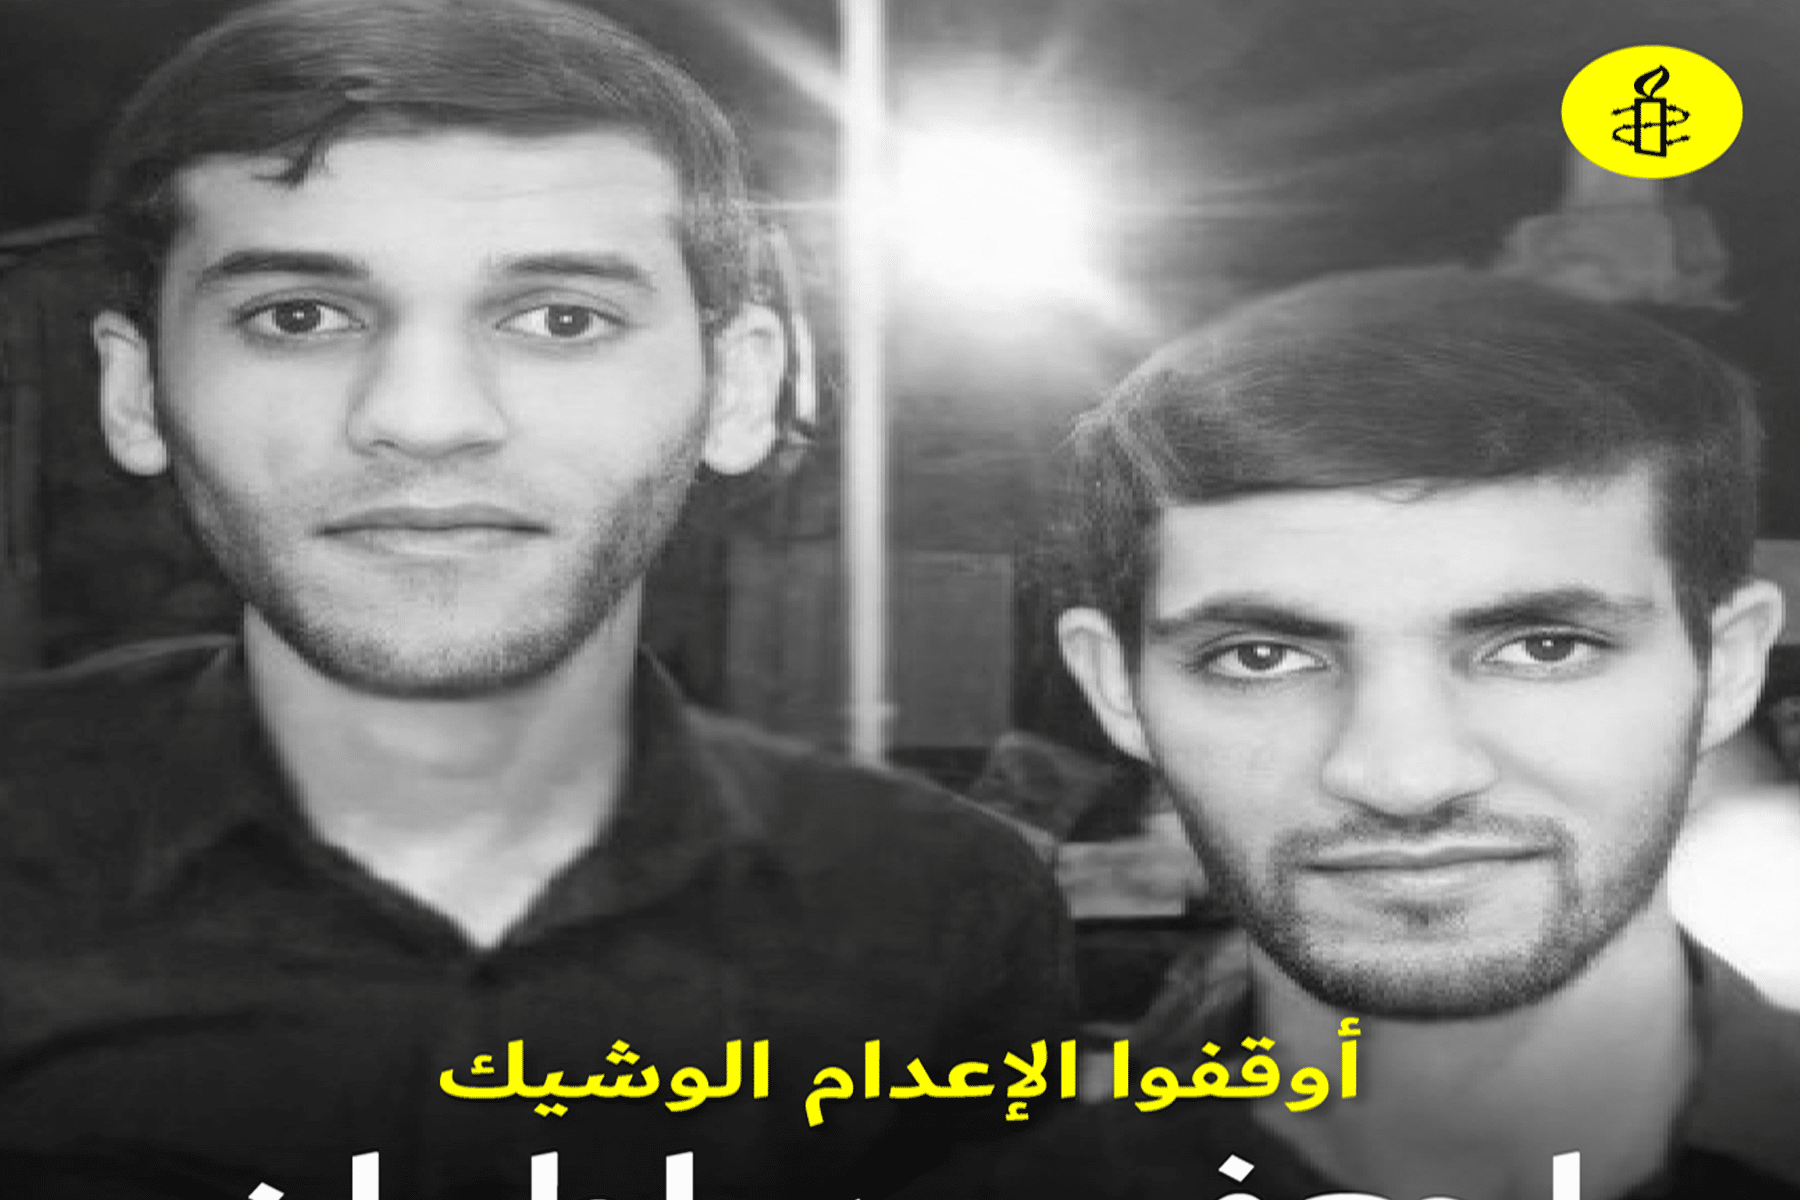 وقف إعدام ناشطين بحرينيين watanserb.com